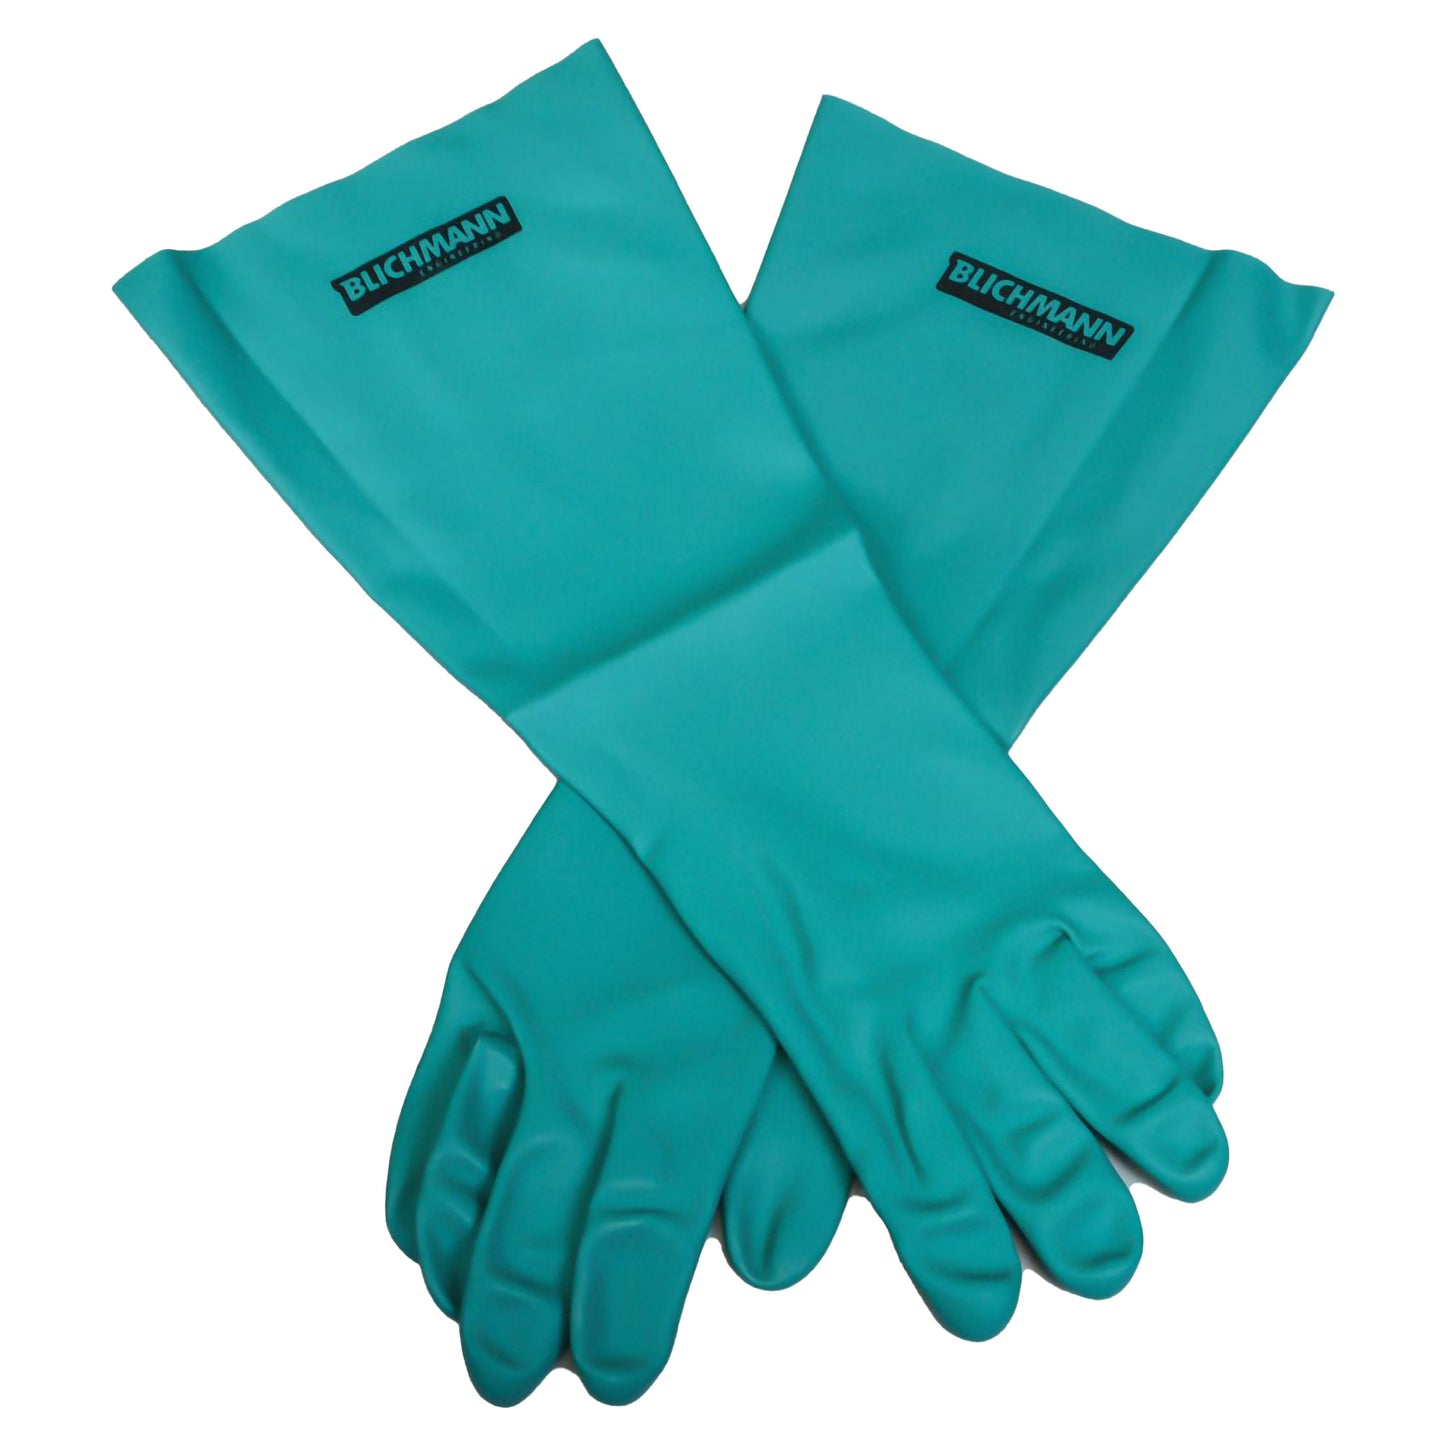 Blichmann Brewing Gloves